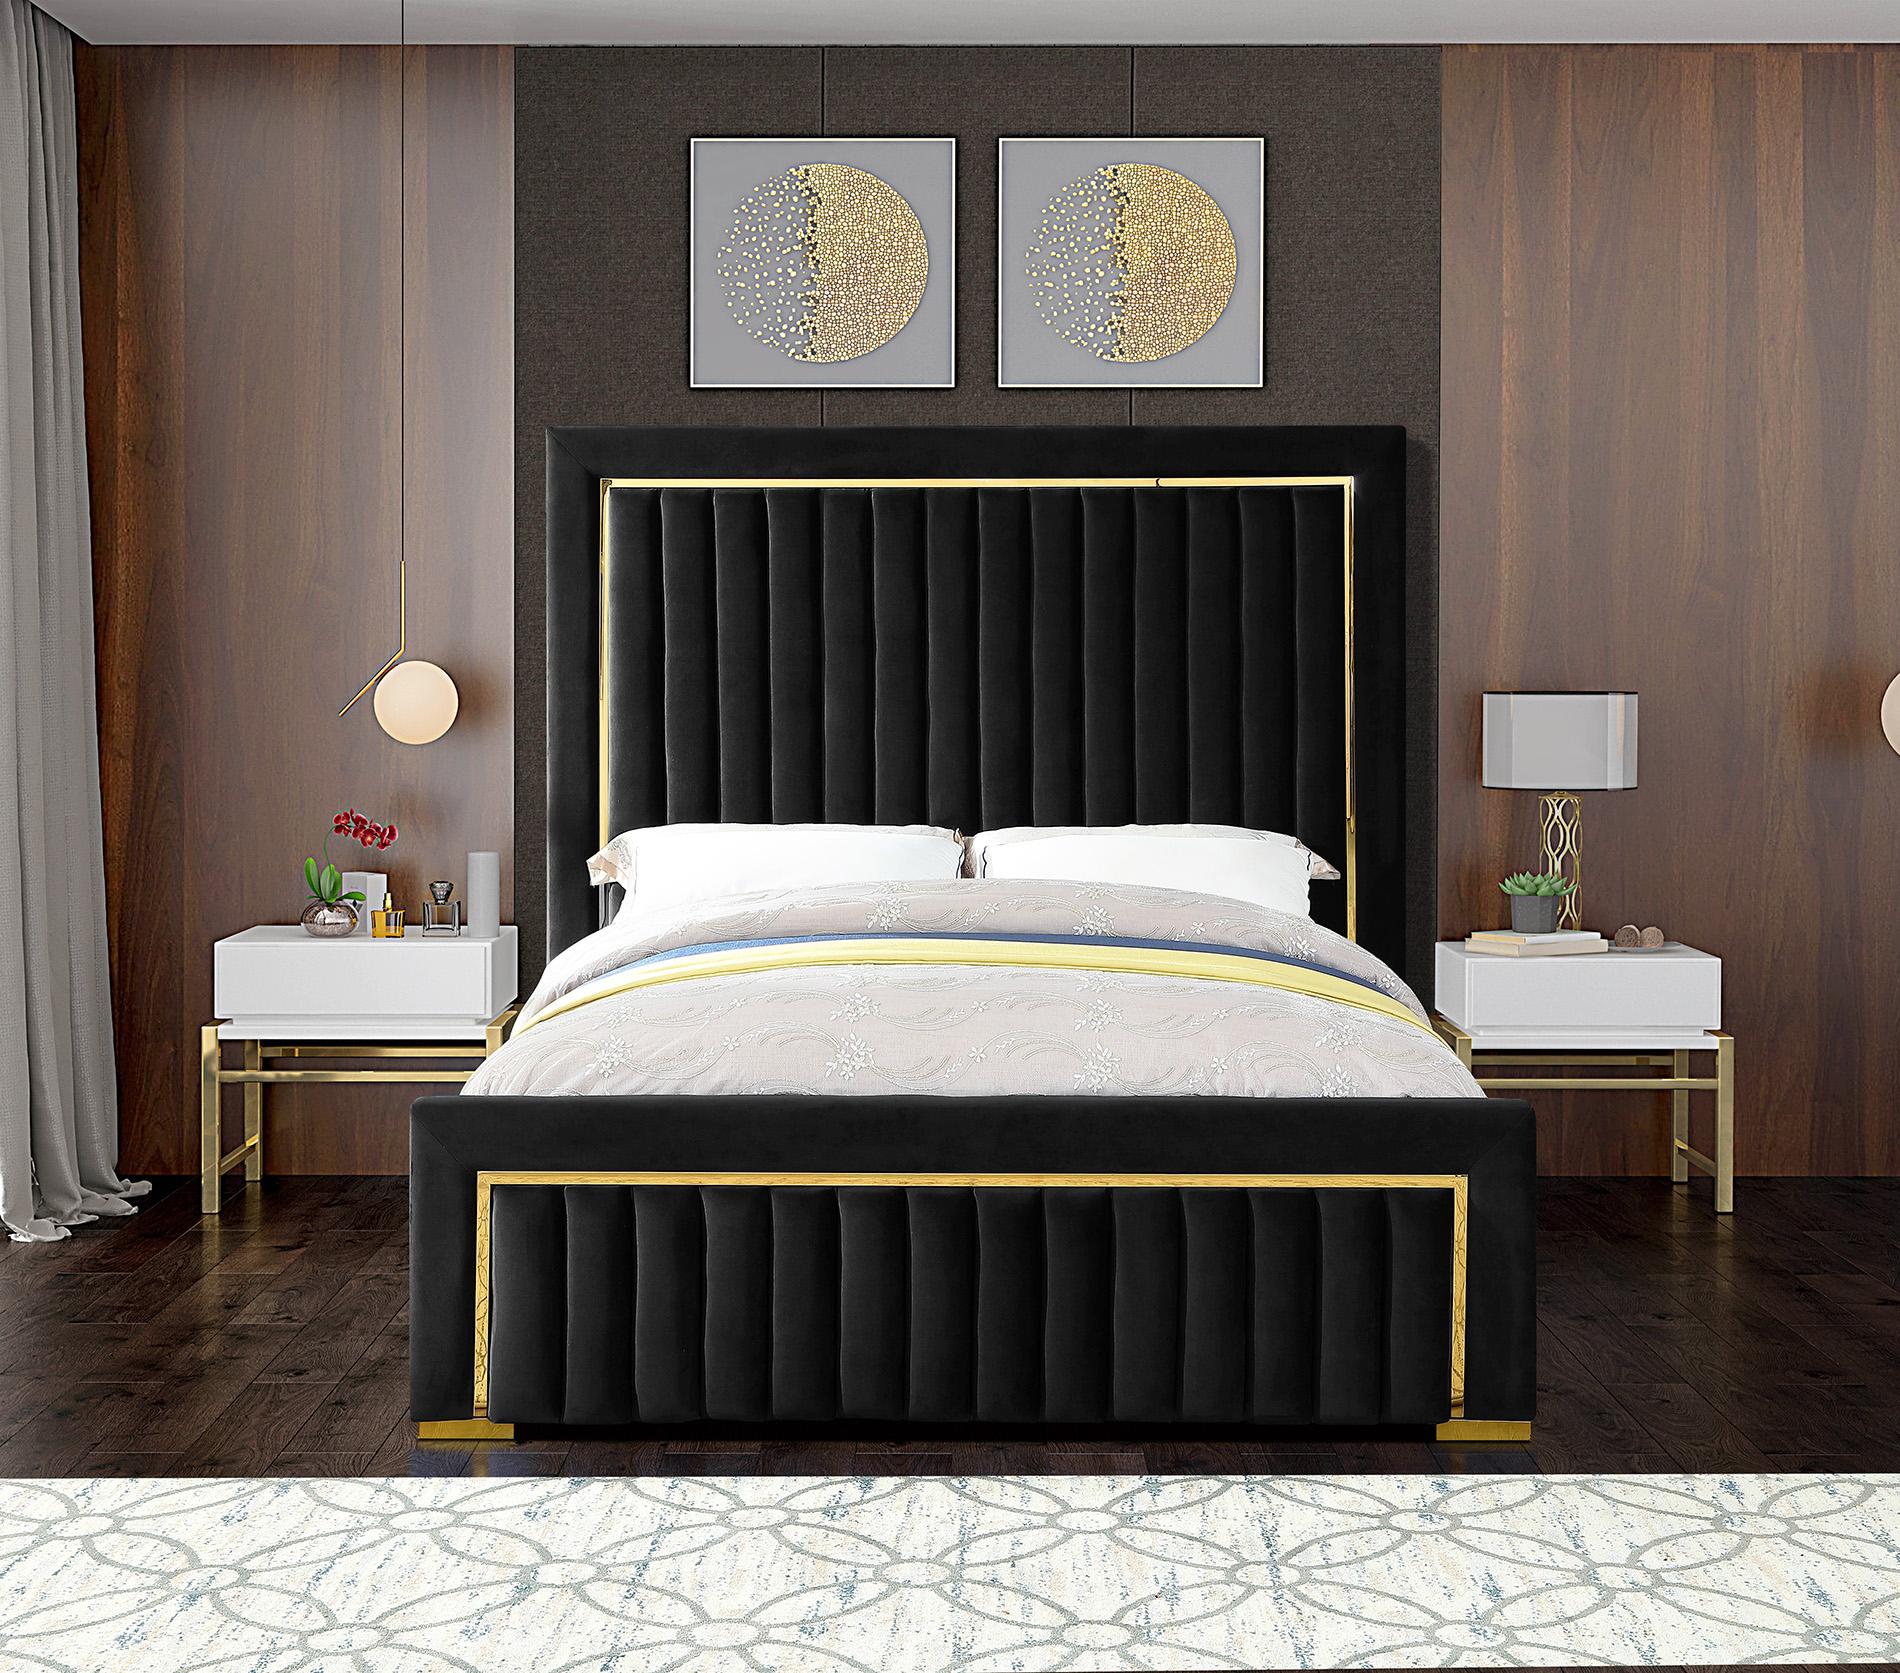 

    
Meridian Furniture DOLCE Black-K Platform Bed Black DolceBlack-K
